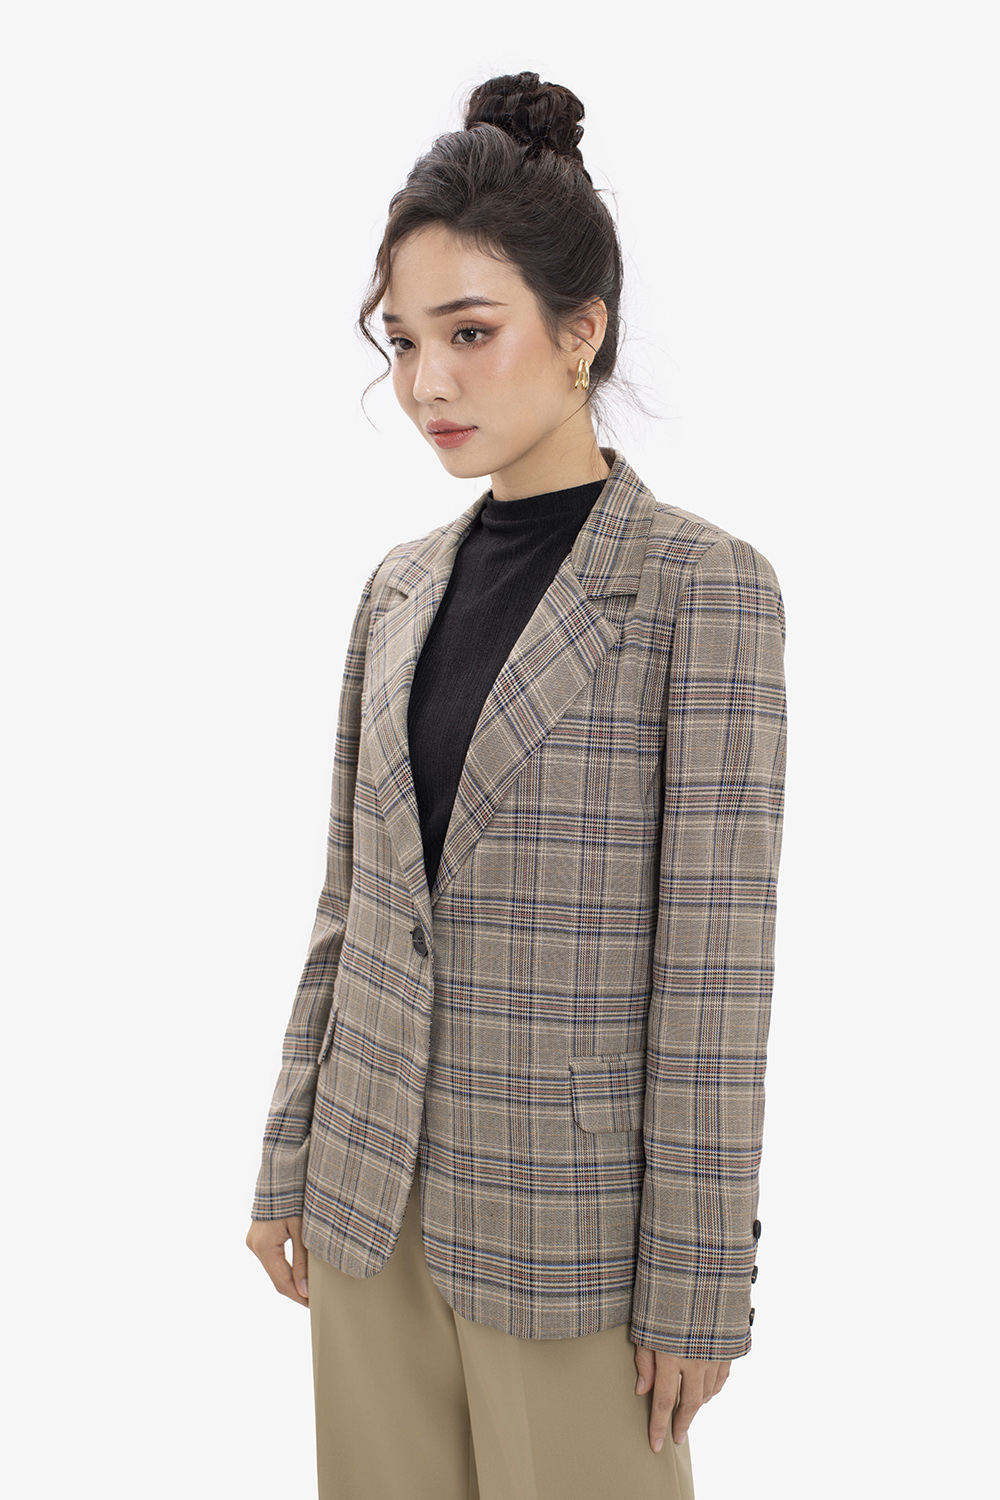 Áo vest nữ ⚡??? ?????⚡ form rộng kẻ sọc phong cách Hàn Quốc, Áo khoác nữ  dáng suông rộng thời trang công sở - khuyến mãi giá rẻ chỉ: 169.800 đ |  Giảm giá mỗi ngày